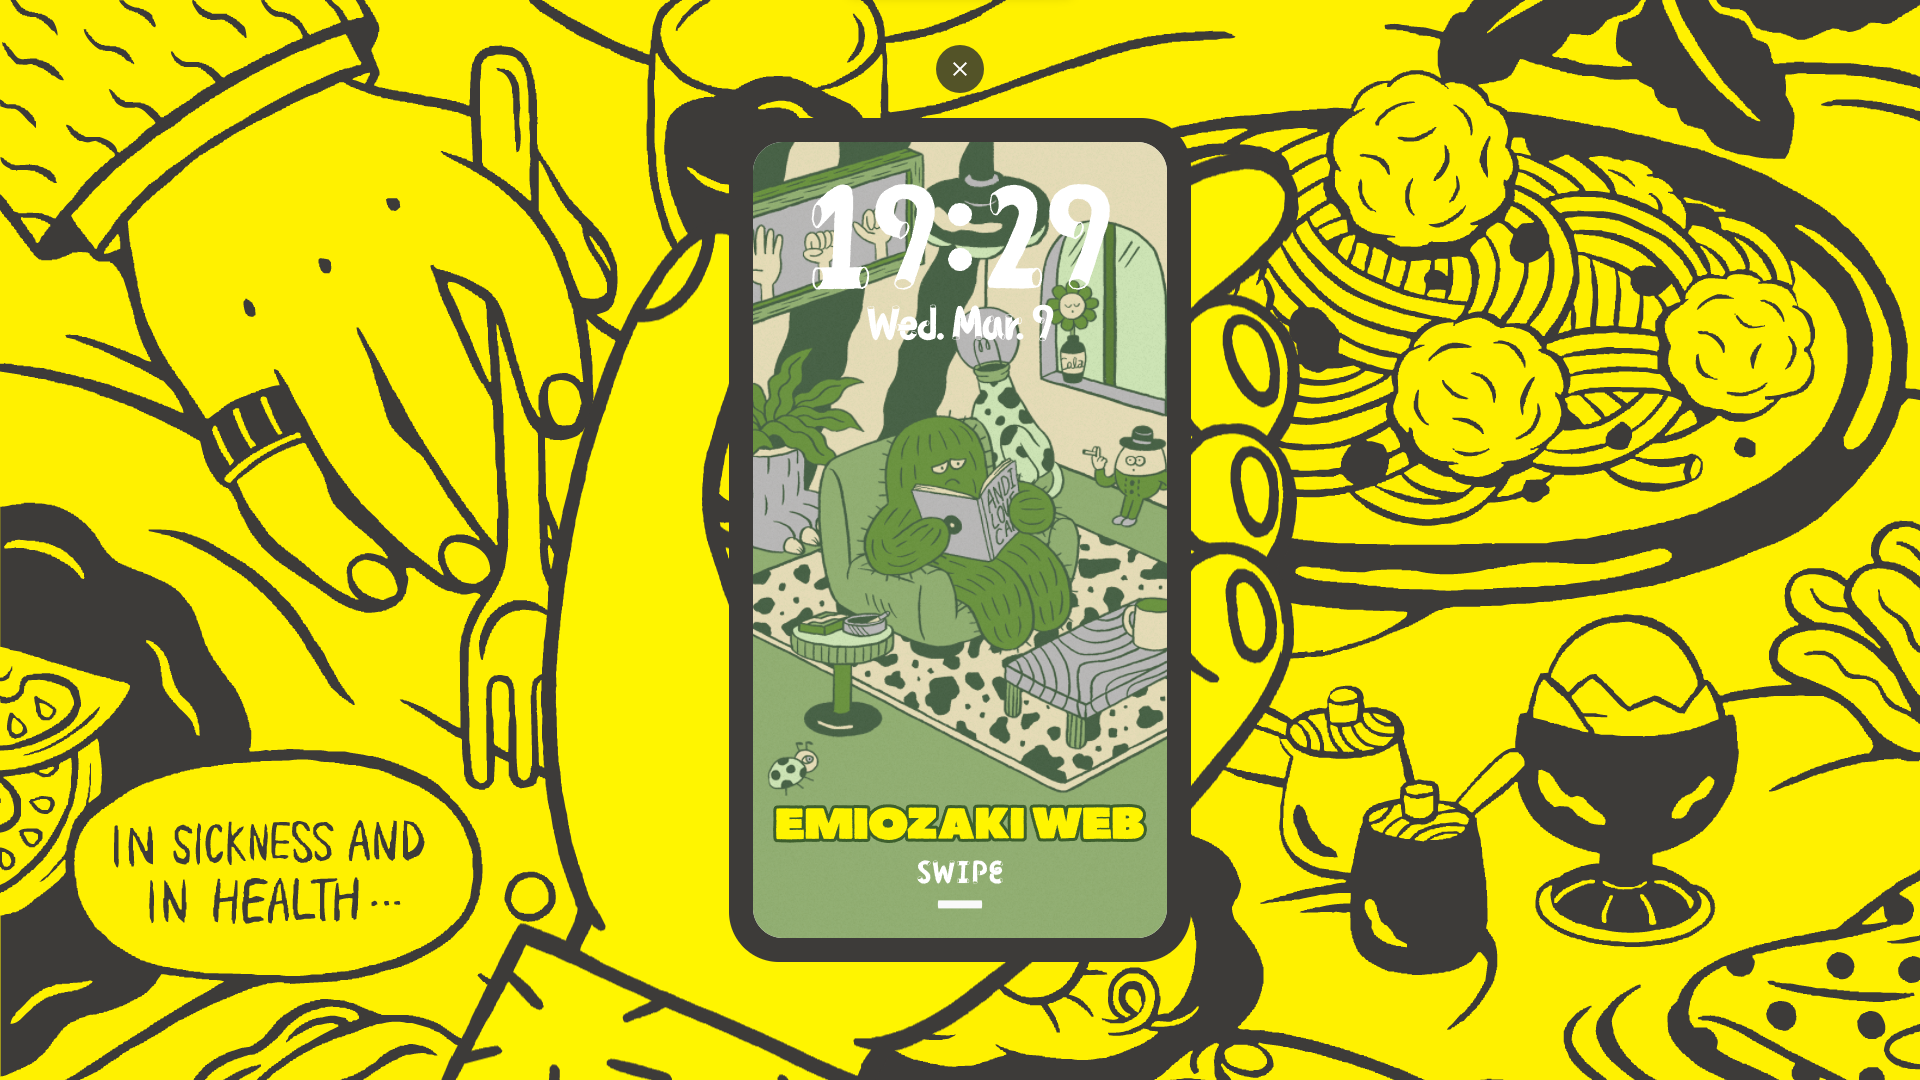 Emiozaki web all winners animation